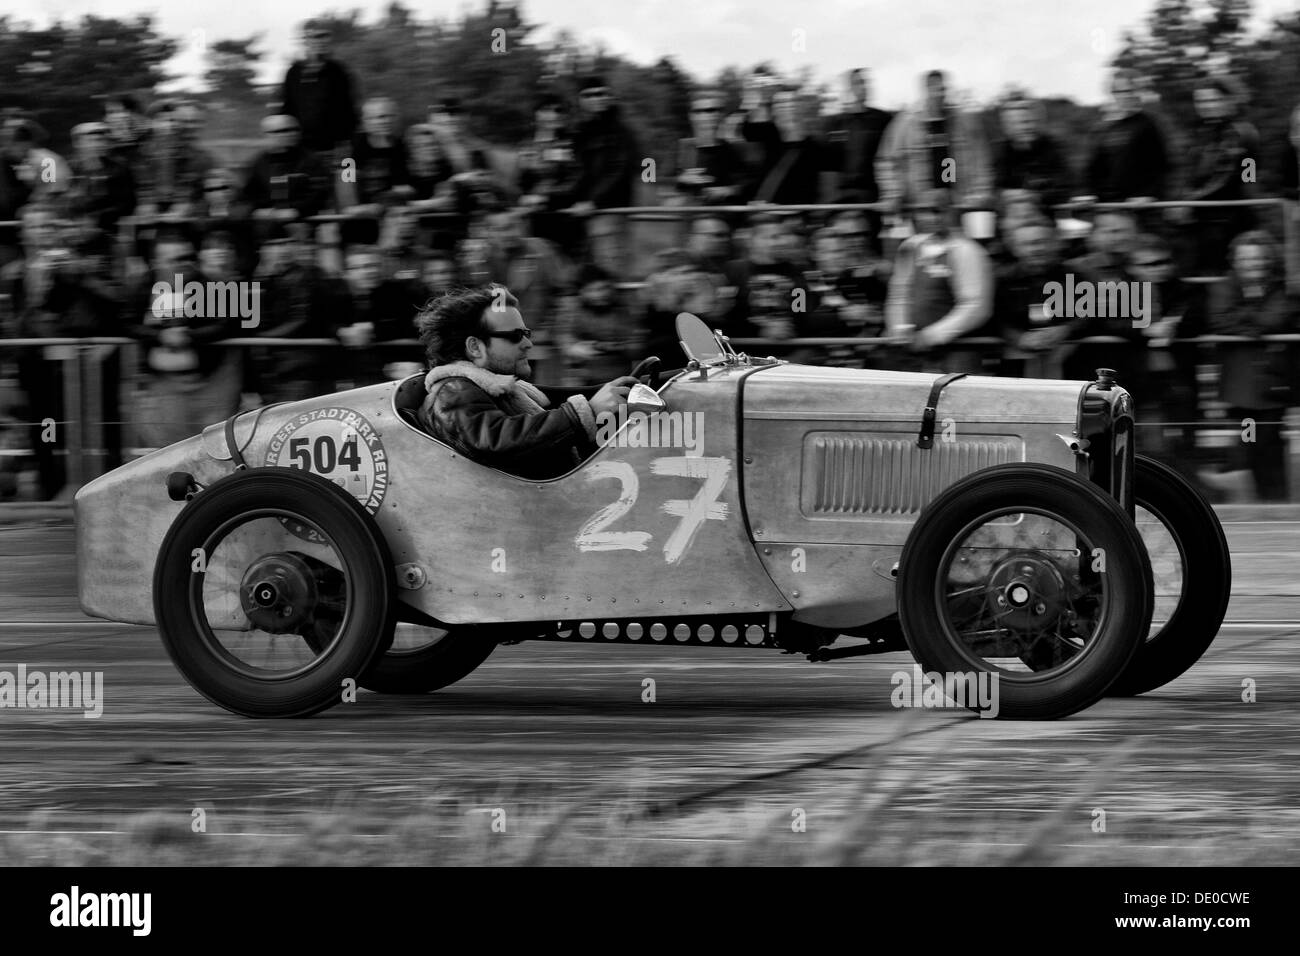 Vintage car, eighth-mile race, 10th Roadrunner Festival at Finowfurt, Brandenburg Stock Photo